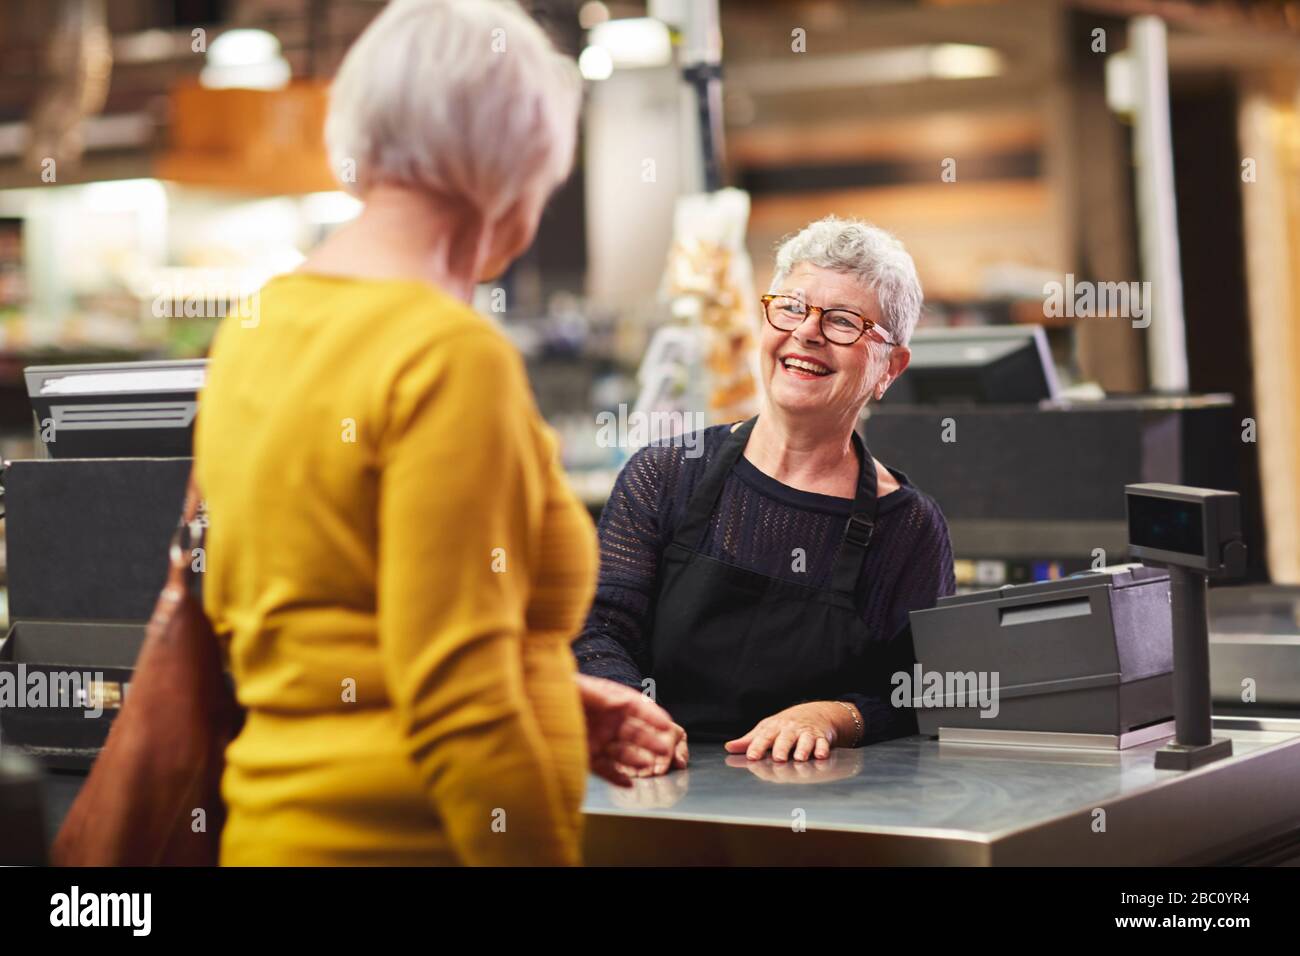 Bonne cliente senior qui souhaite la bienvenue au client au moment du contrôle au supermarché Banque D'Images